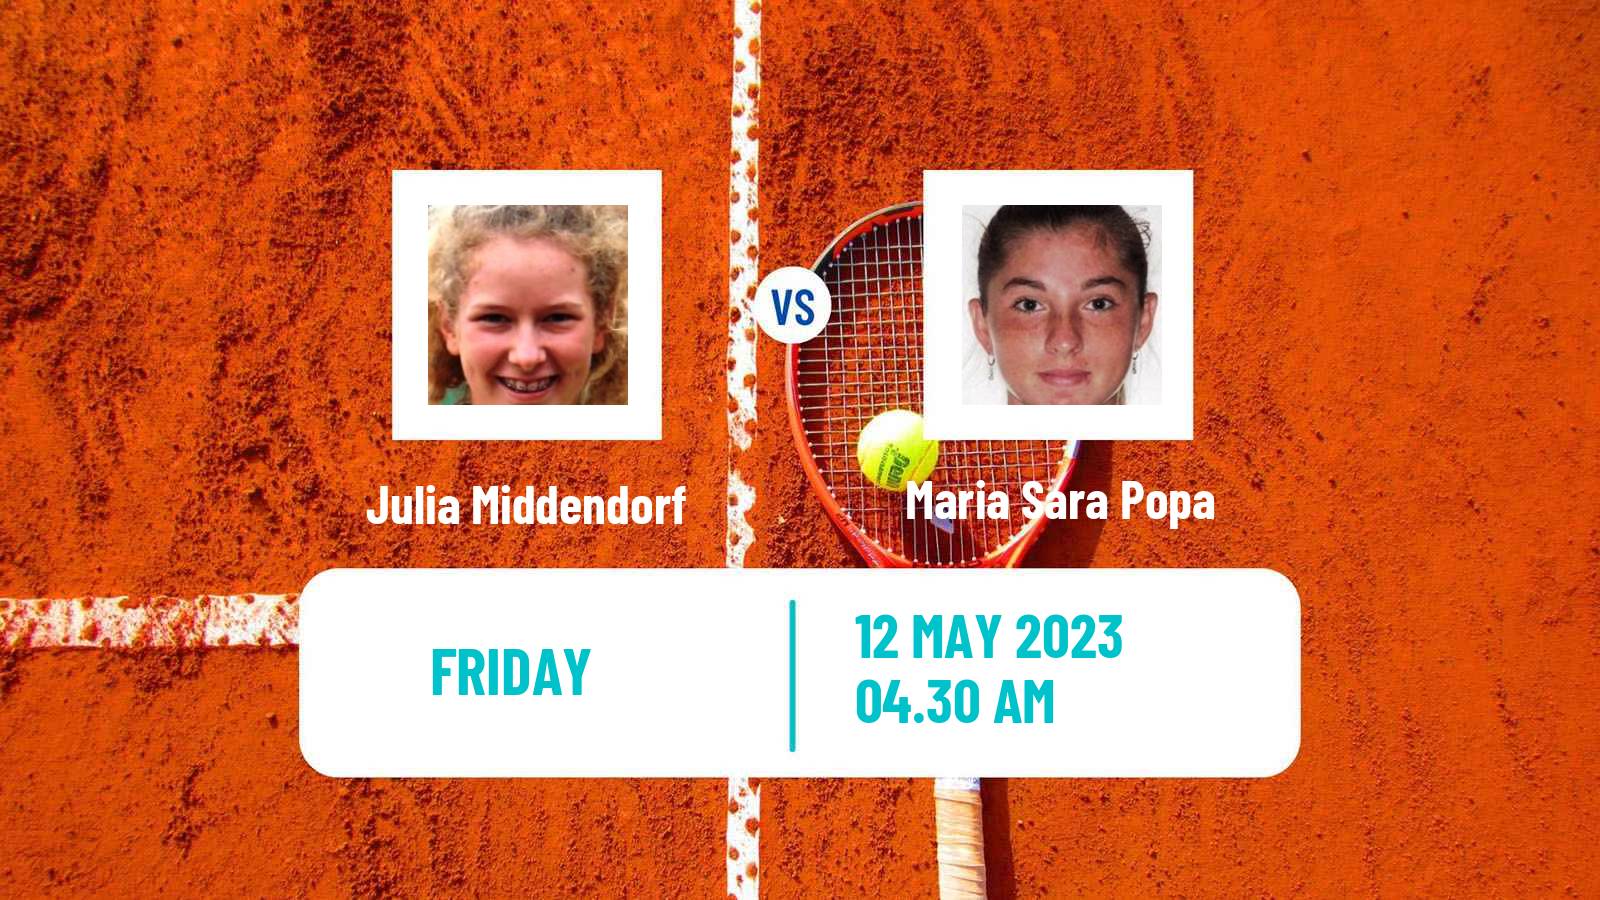 Tennis ITF Tournaments Julia Middendorf - Maria Sara Popa